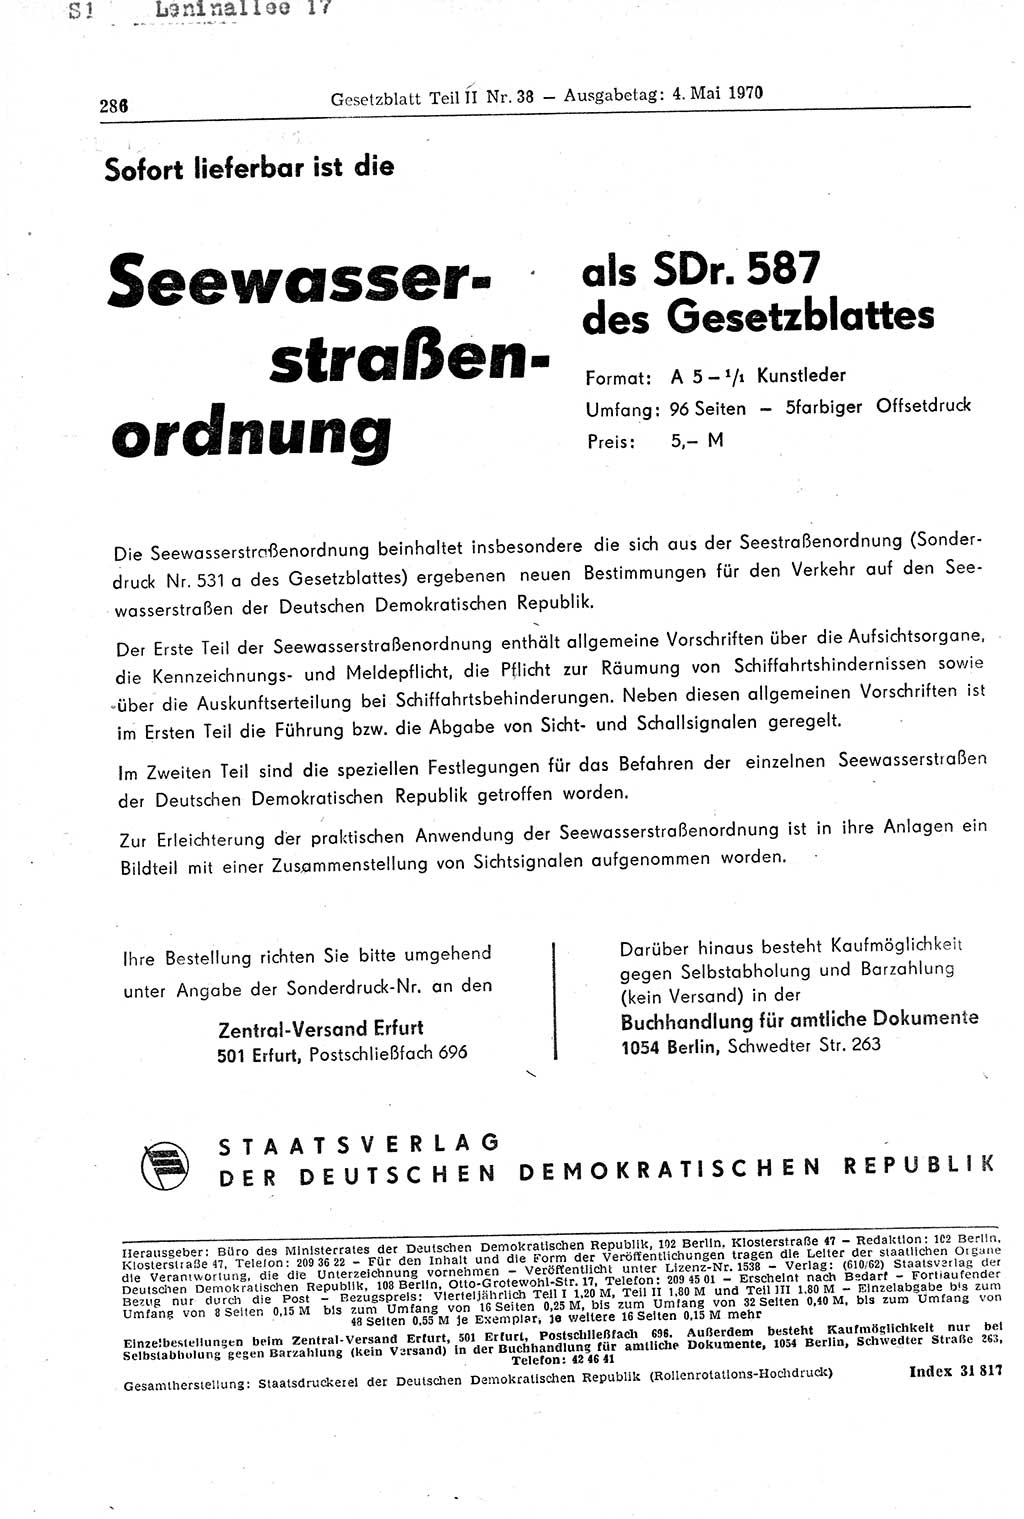 Gesetzblatt (GBl.) der Deutschen Demokratischen Republik (DDR) Teil ⅠⅠ 1970, Seite 286 (GBl. DDR ⅠⅠ 1970, S. 286)